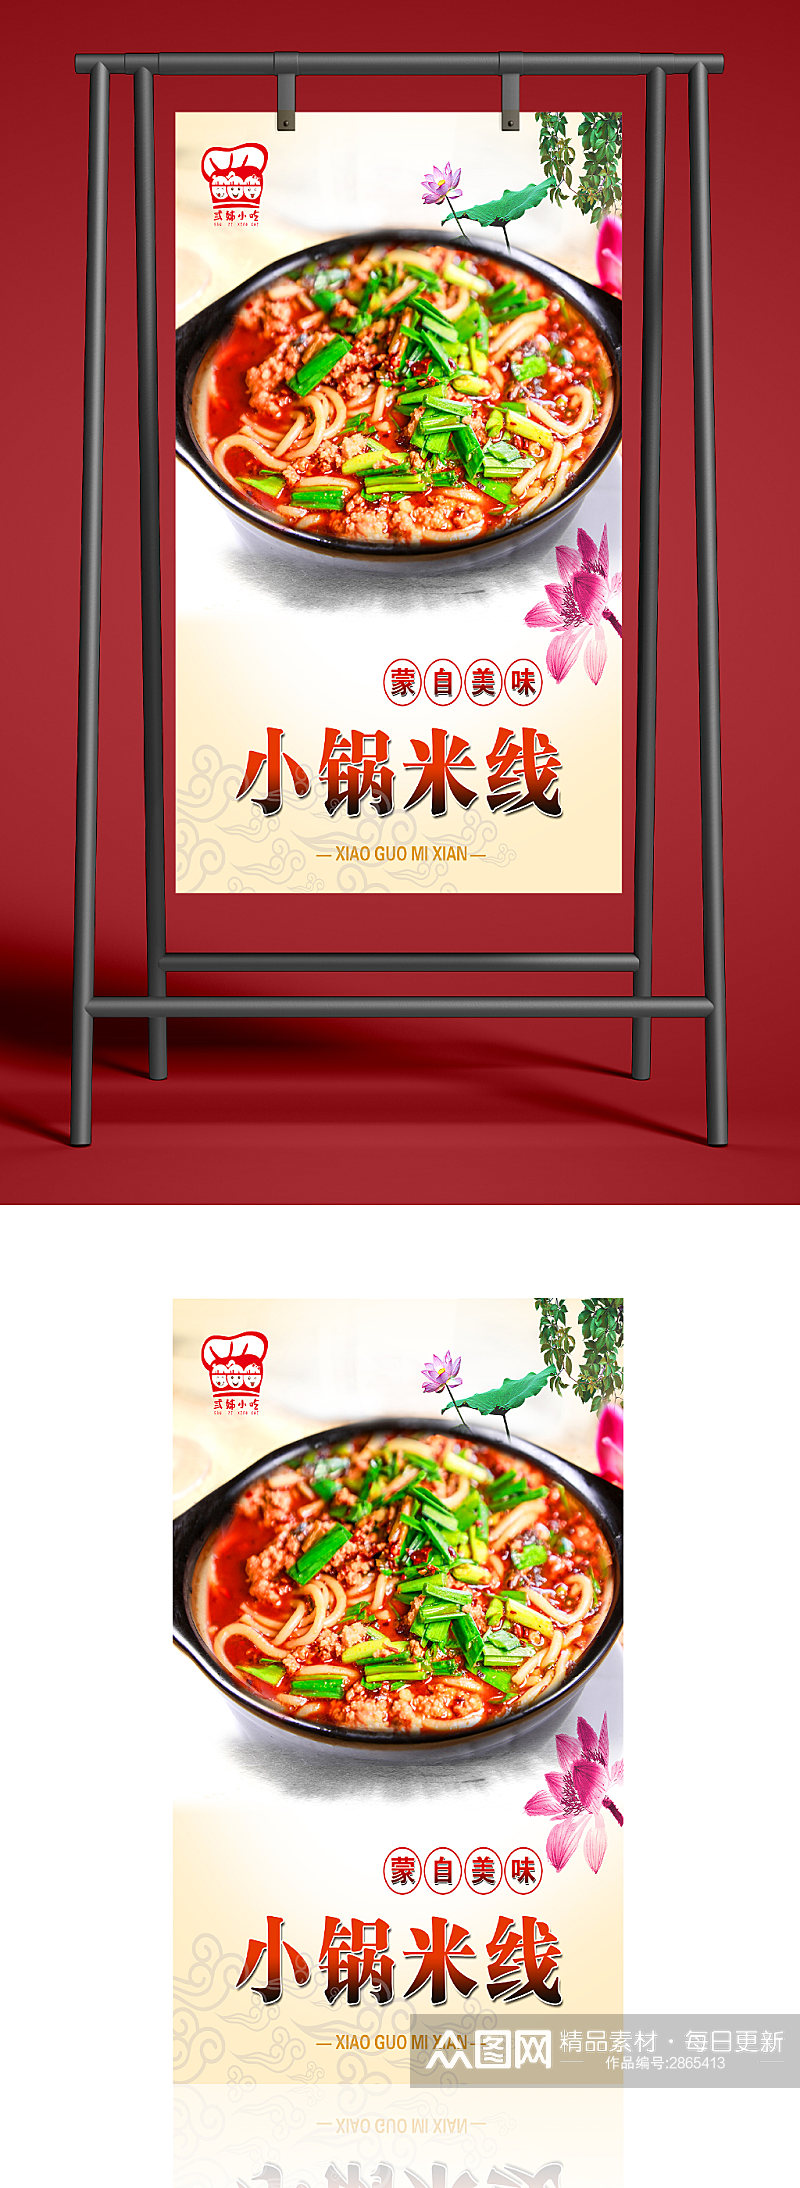 中餐小锅米线海报素材